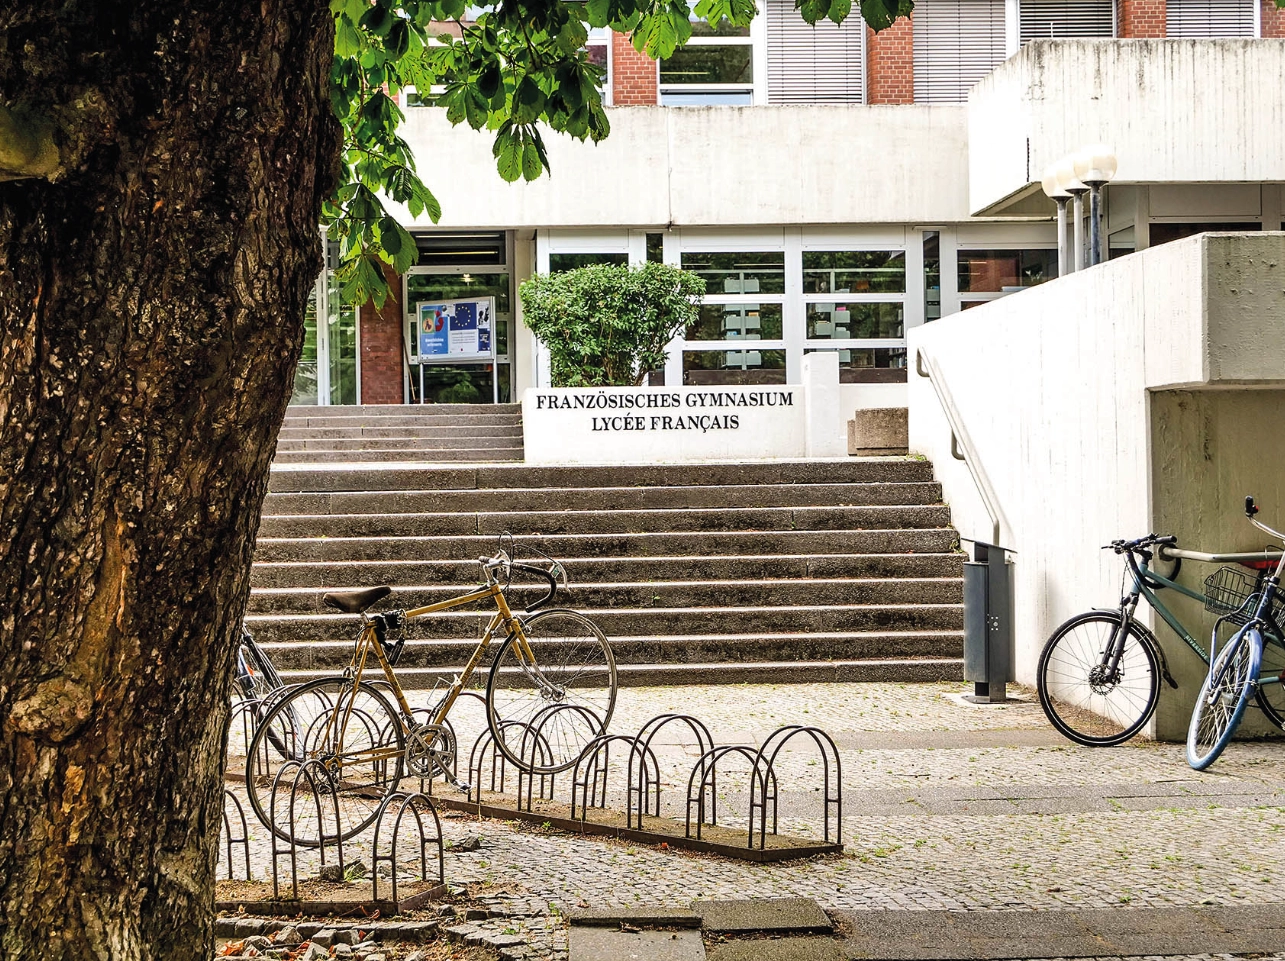 Blick vom Schulhof auf den Eingang eines Schulgebäudes; davor eine breite Treppe und Fahrradständer.